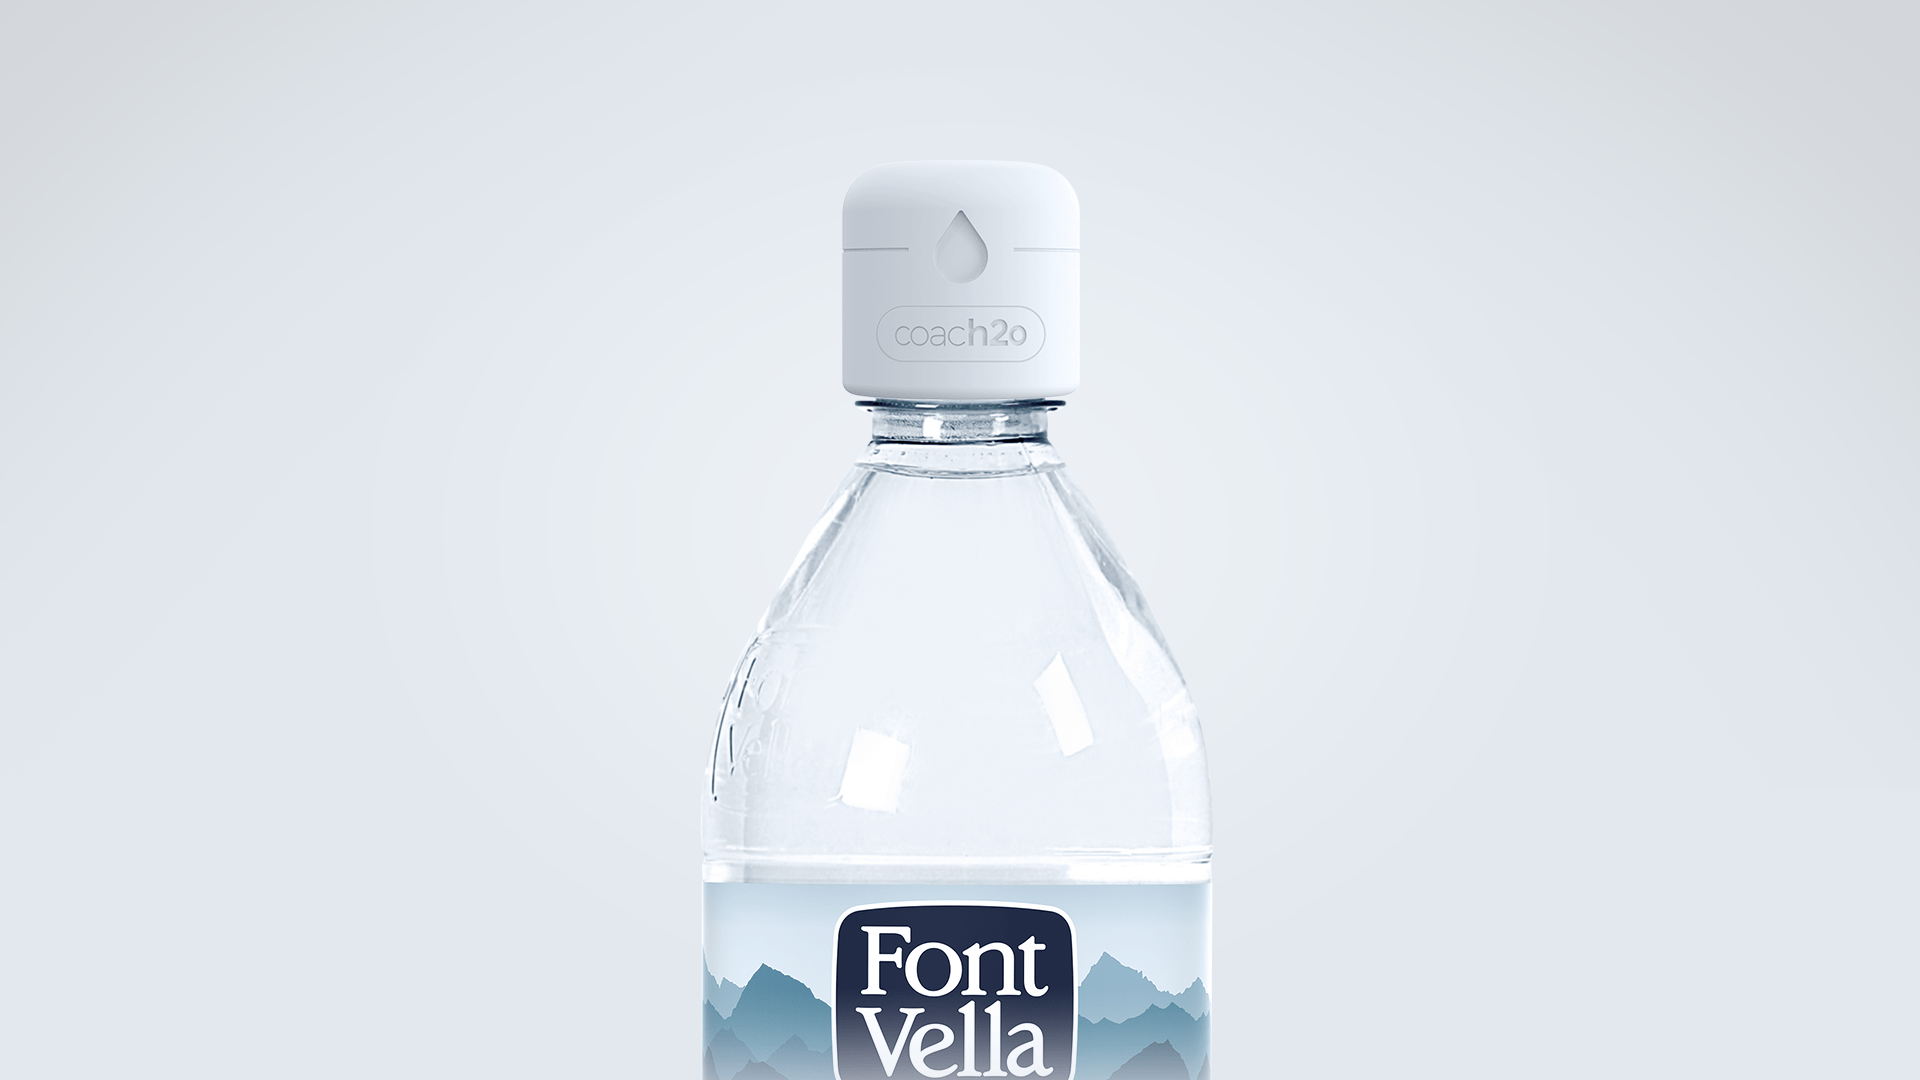 Font Vella bottle